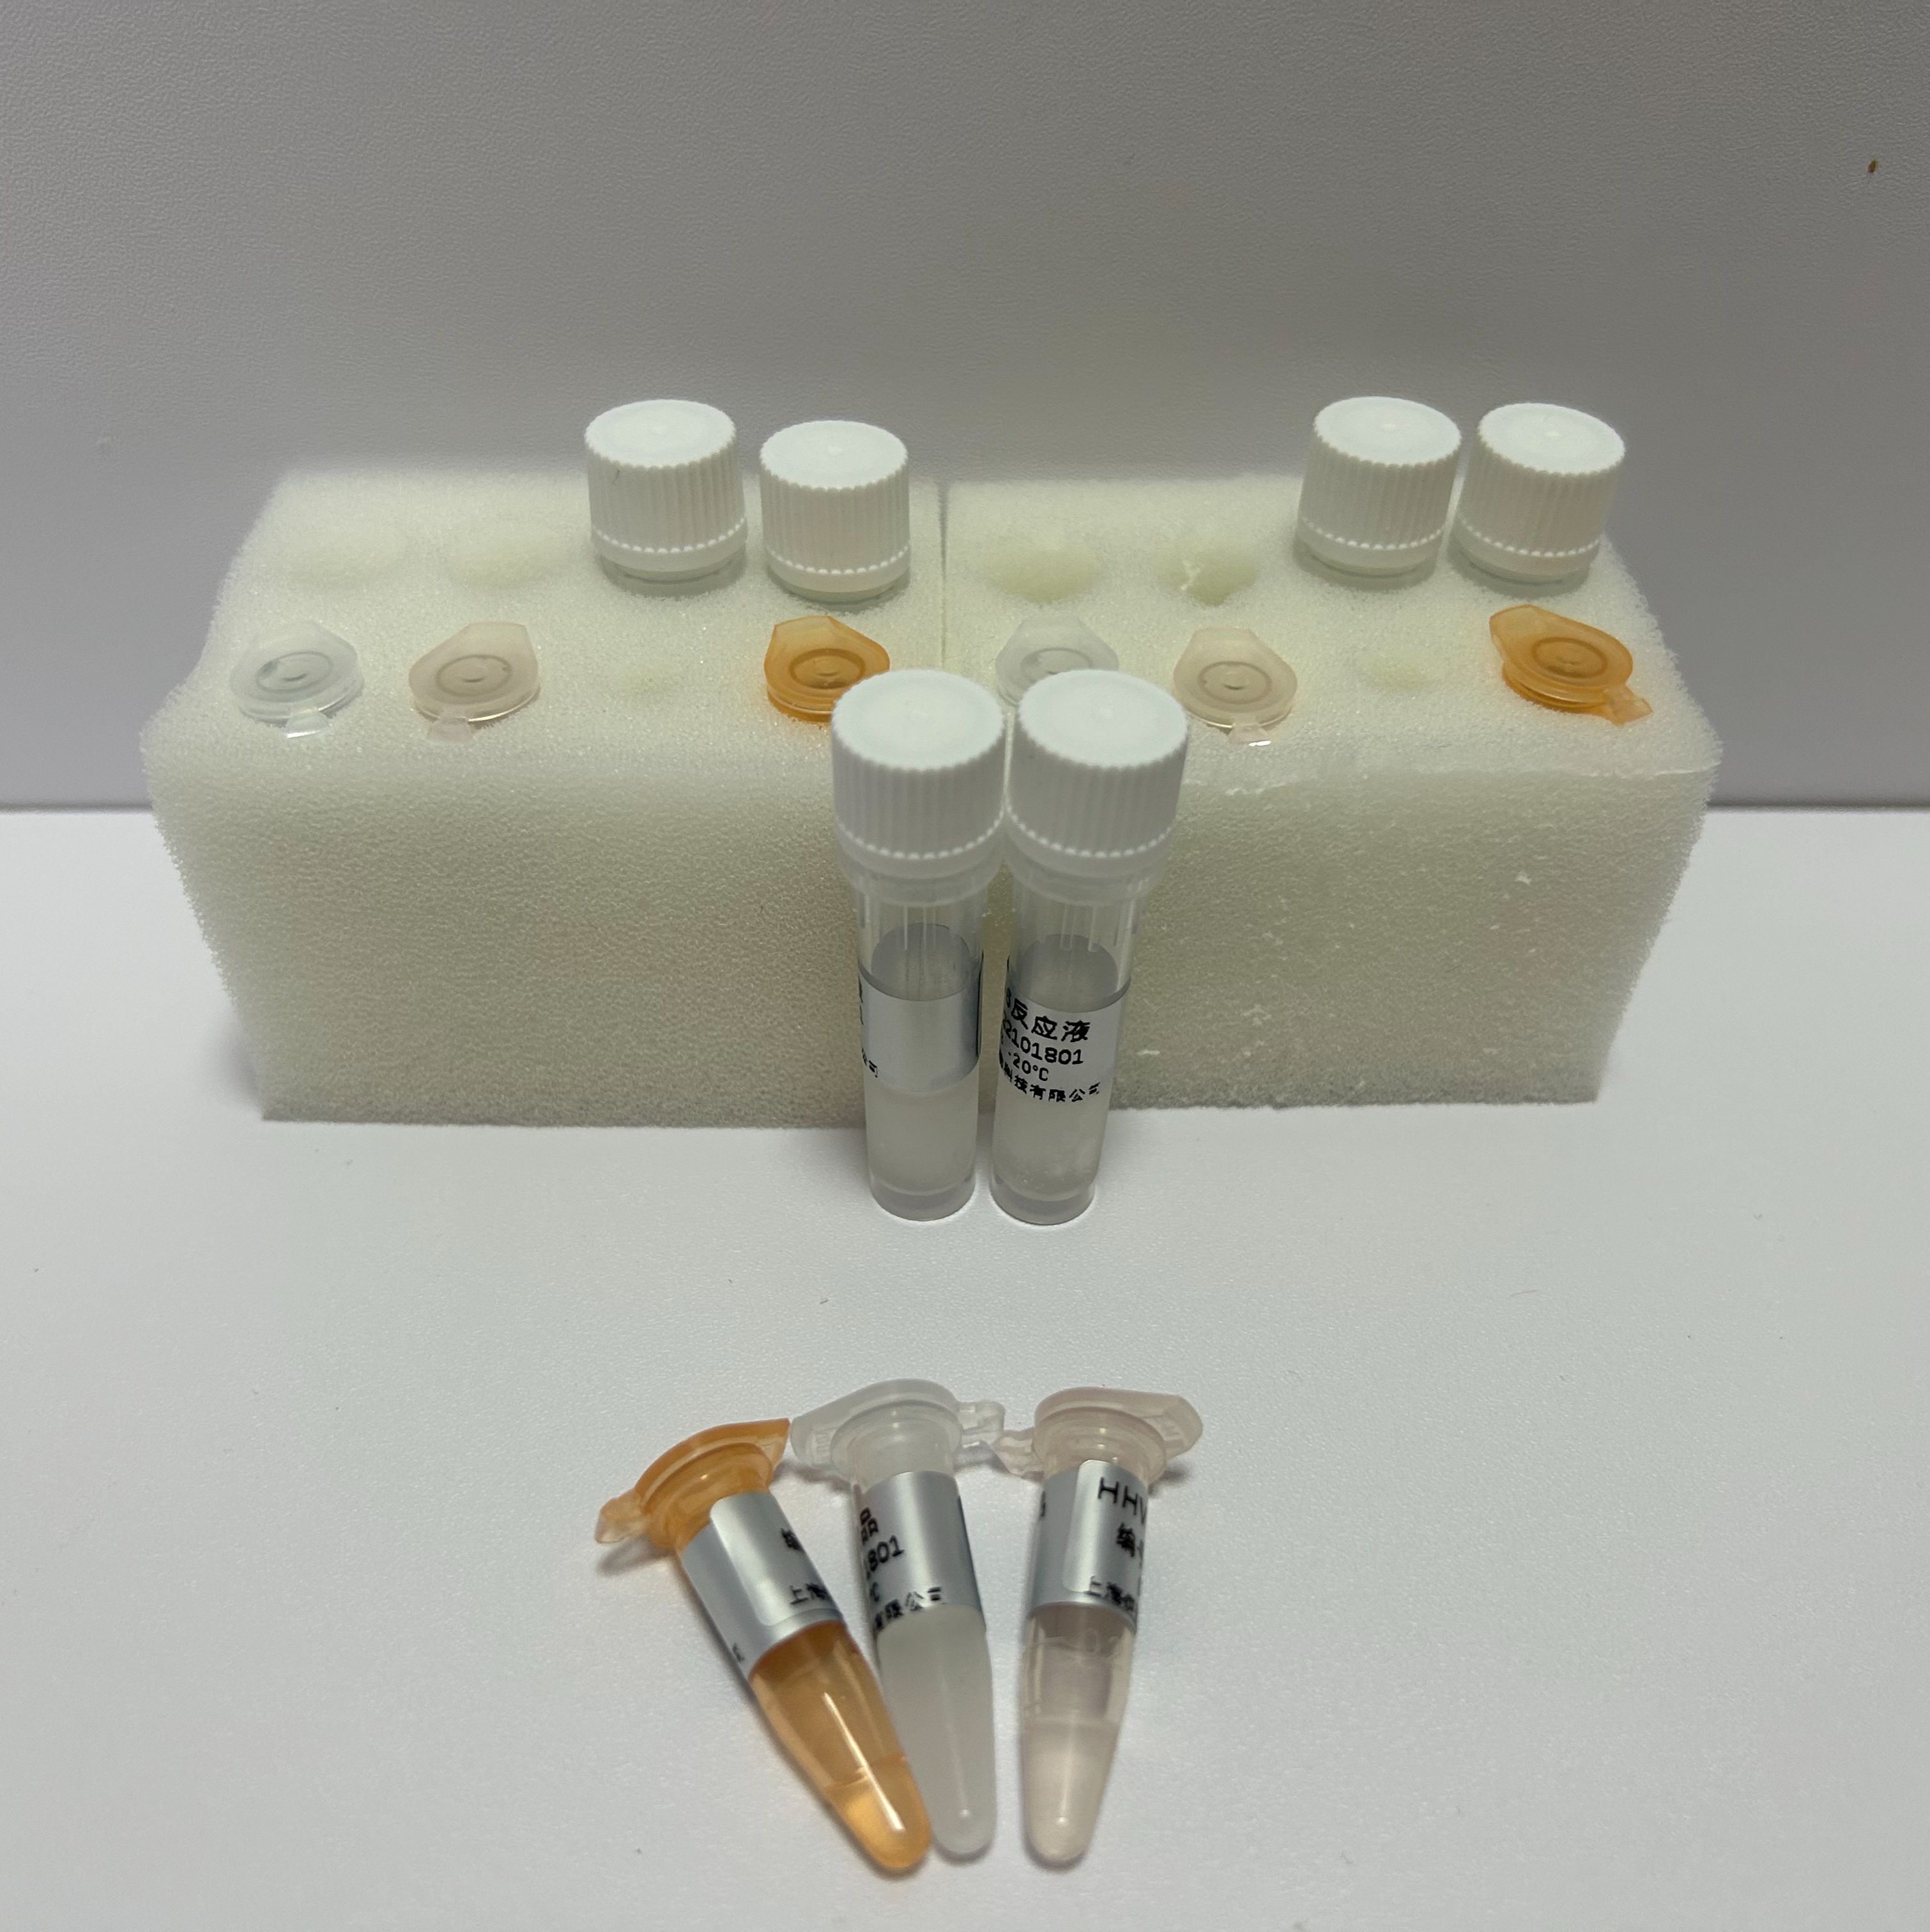 泽兰染料法PCR鉴定试剂盒